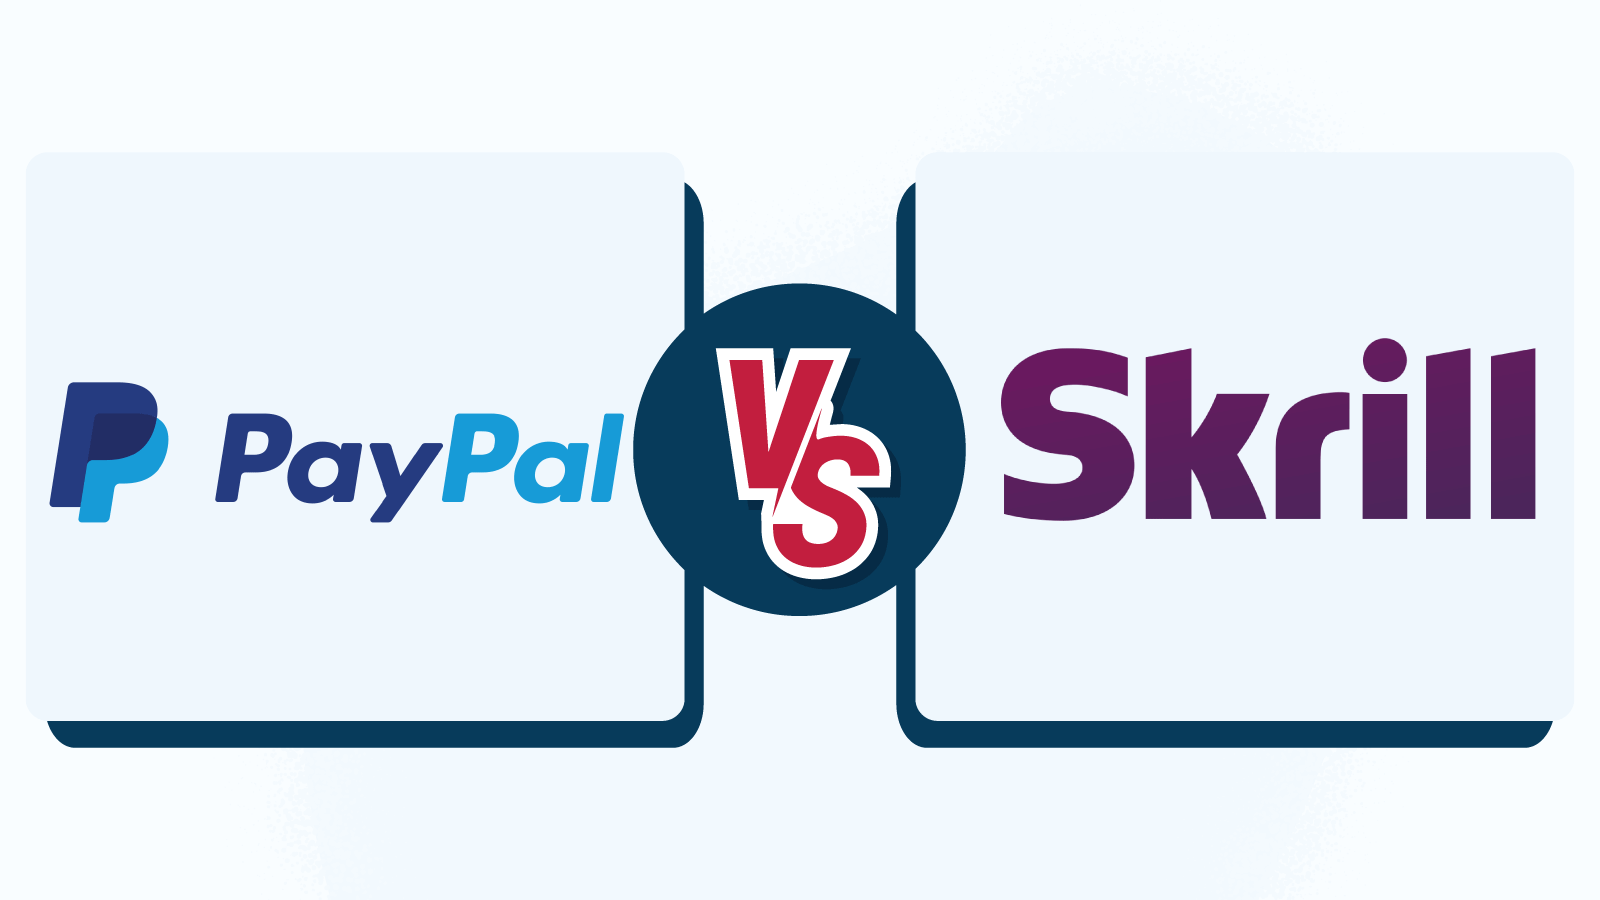 PayPal vs Skrill